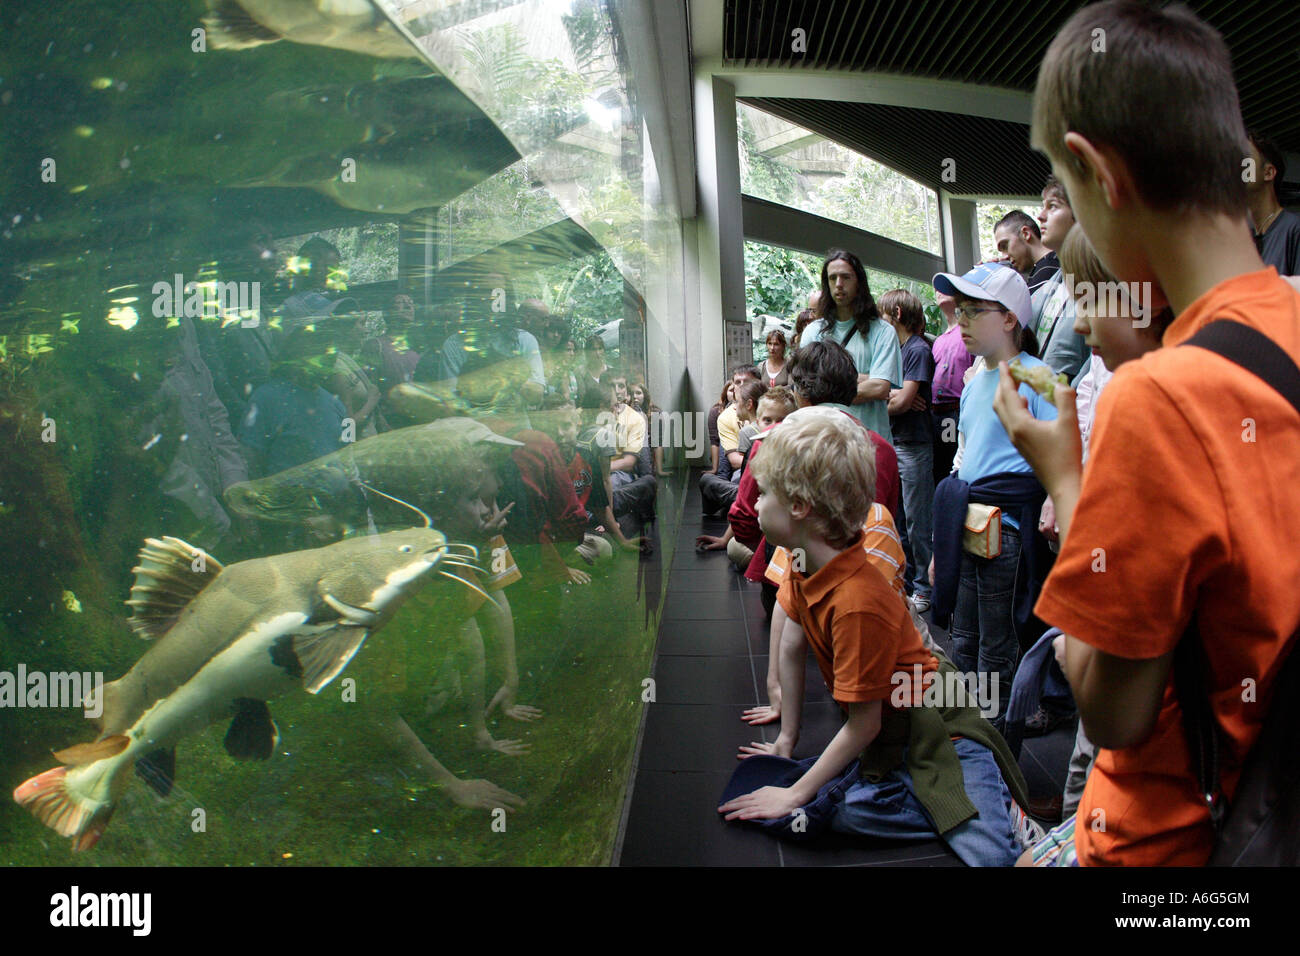 Children and teenager watching fish at Berlin Zoo (Aquarium), Germany, Europe Stock Photo